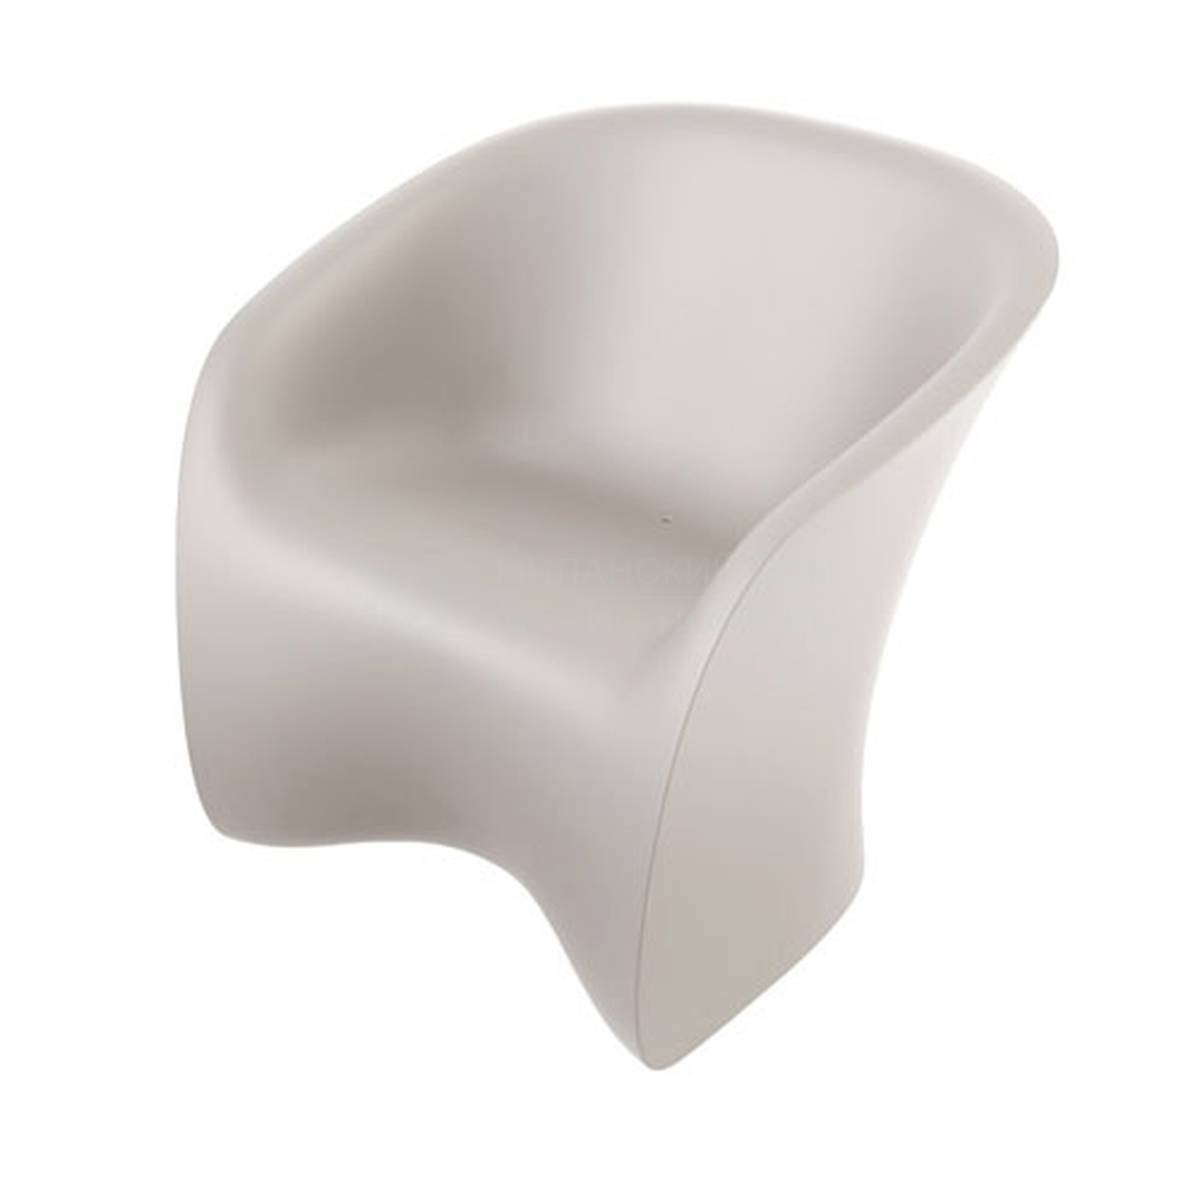 Кресло Nuvola armchair из Италии фабрики ZANOTTA